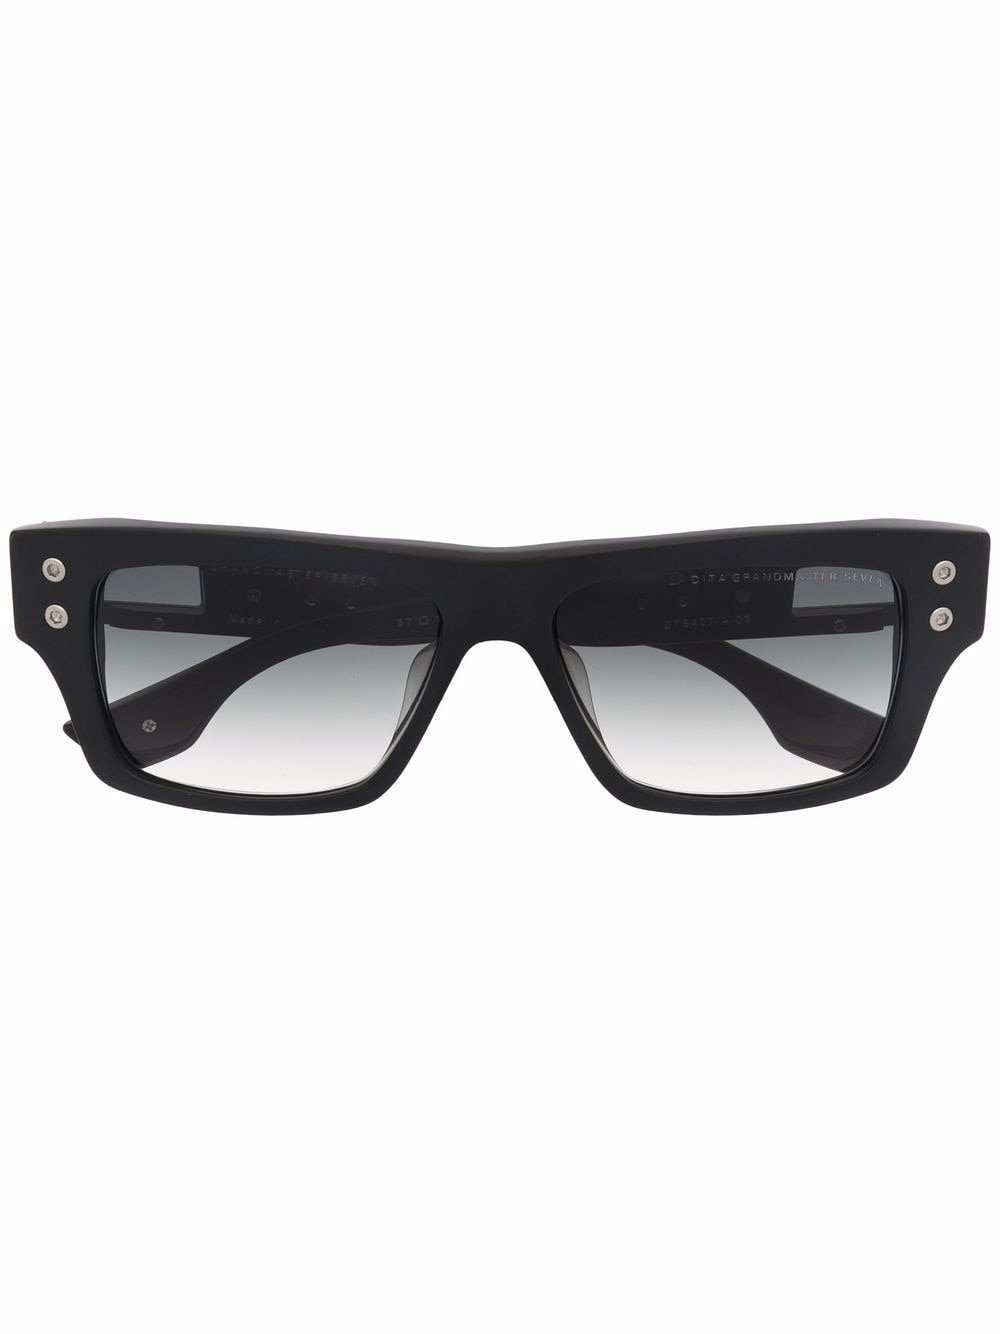 фото Dita eyewear солнцезащитные очки grandmaster в квадратной оправе